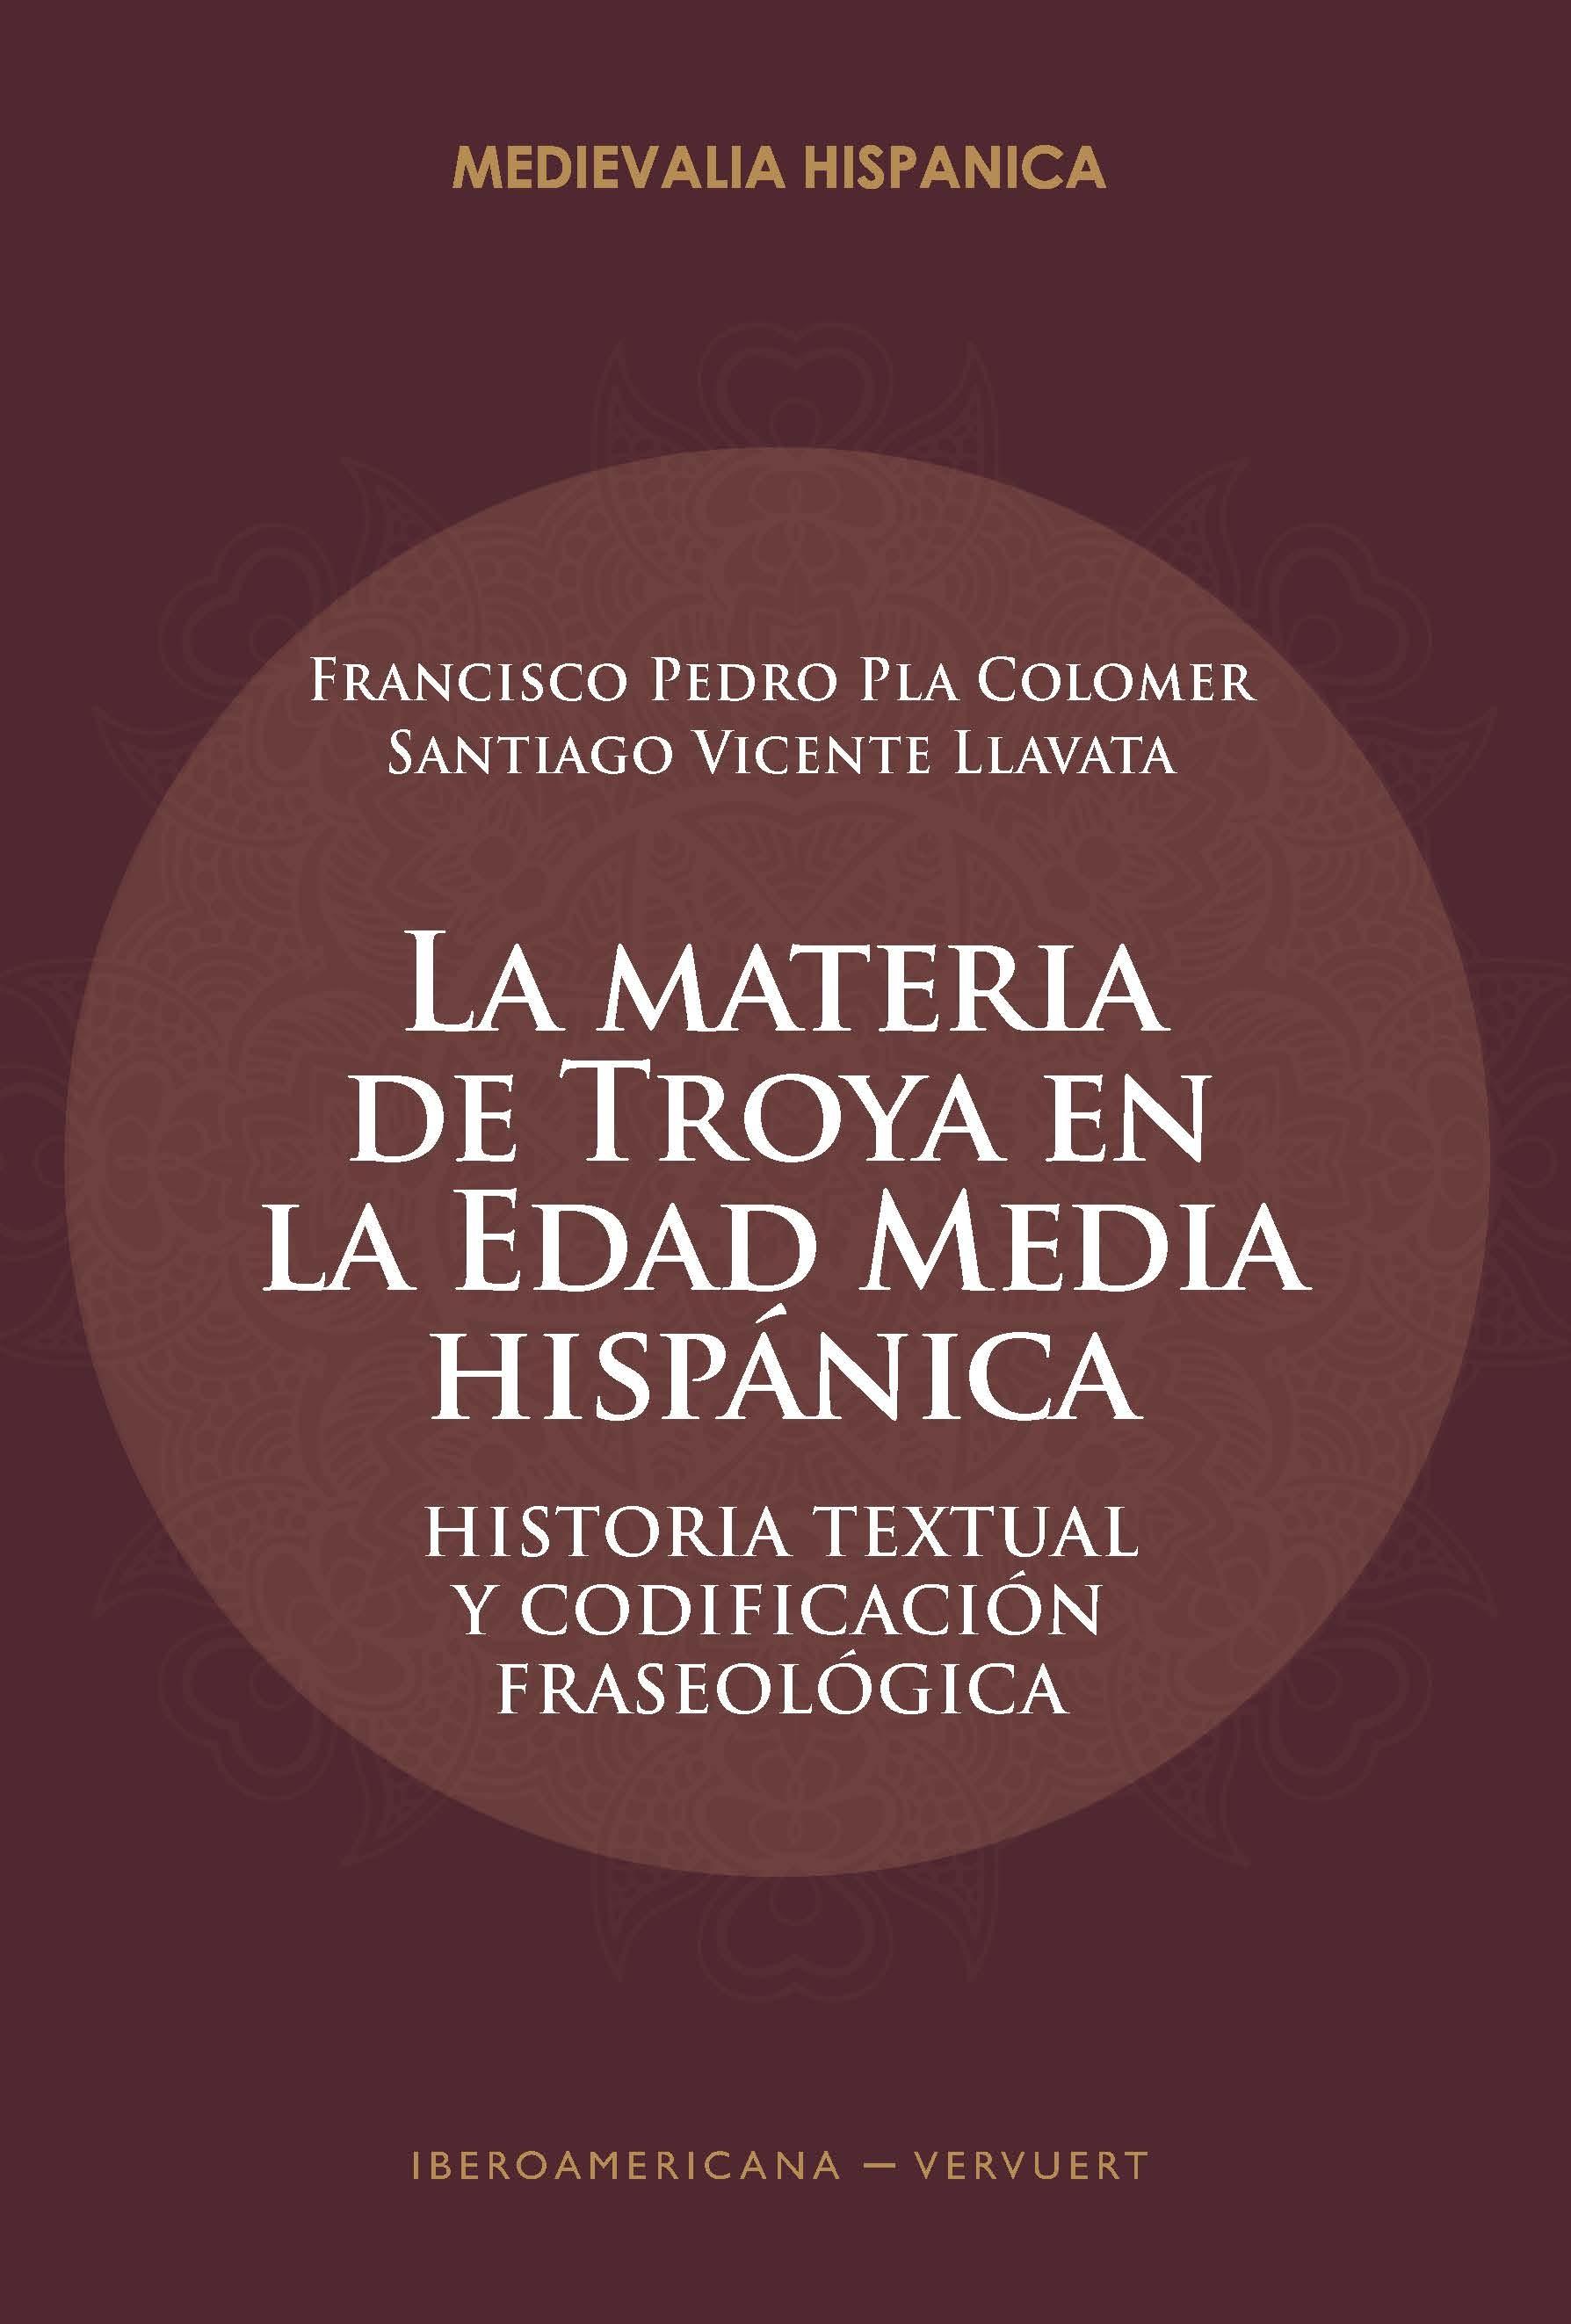 La materia de Troya en la Edad Media hispánica "Historia textual y codificación fraseológica". 